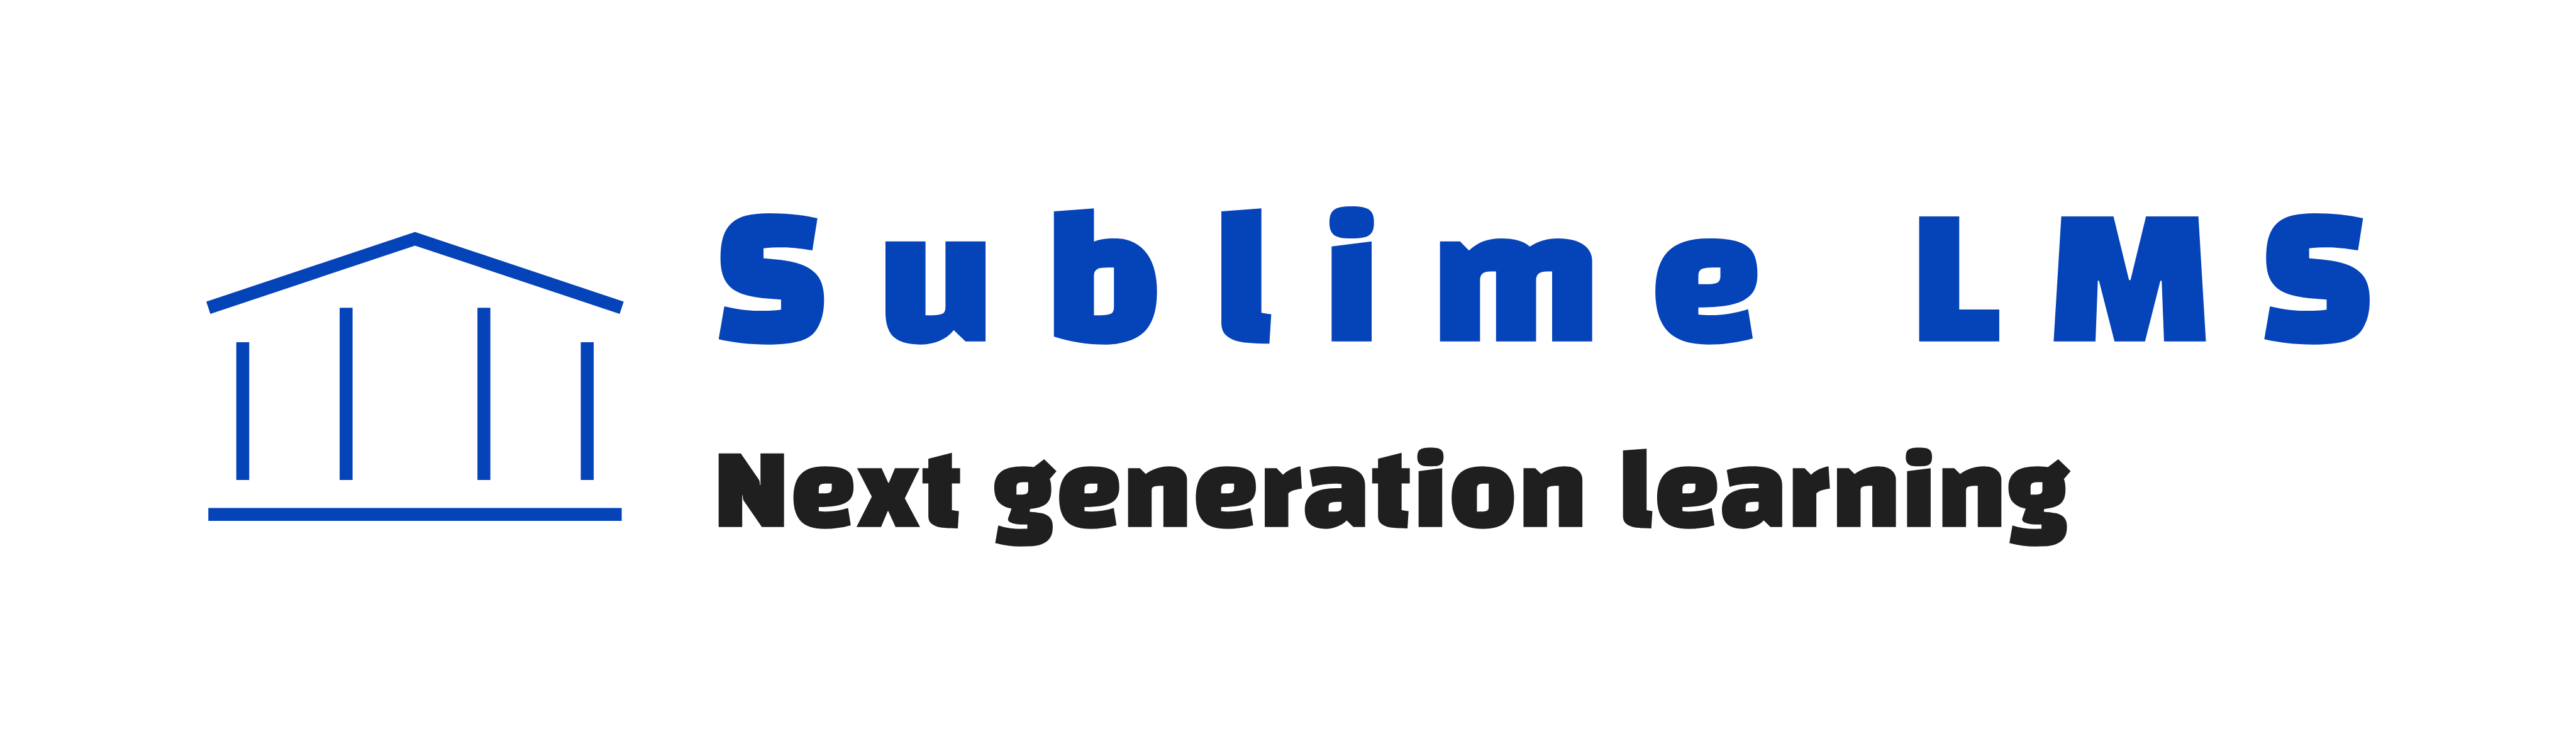 Sublime infra logo